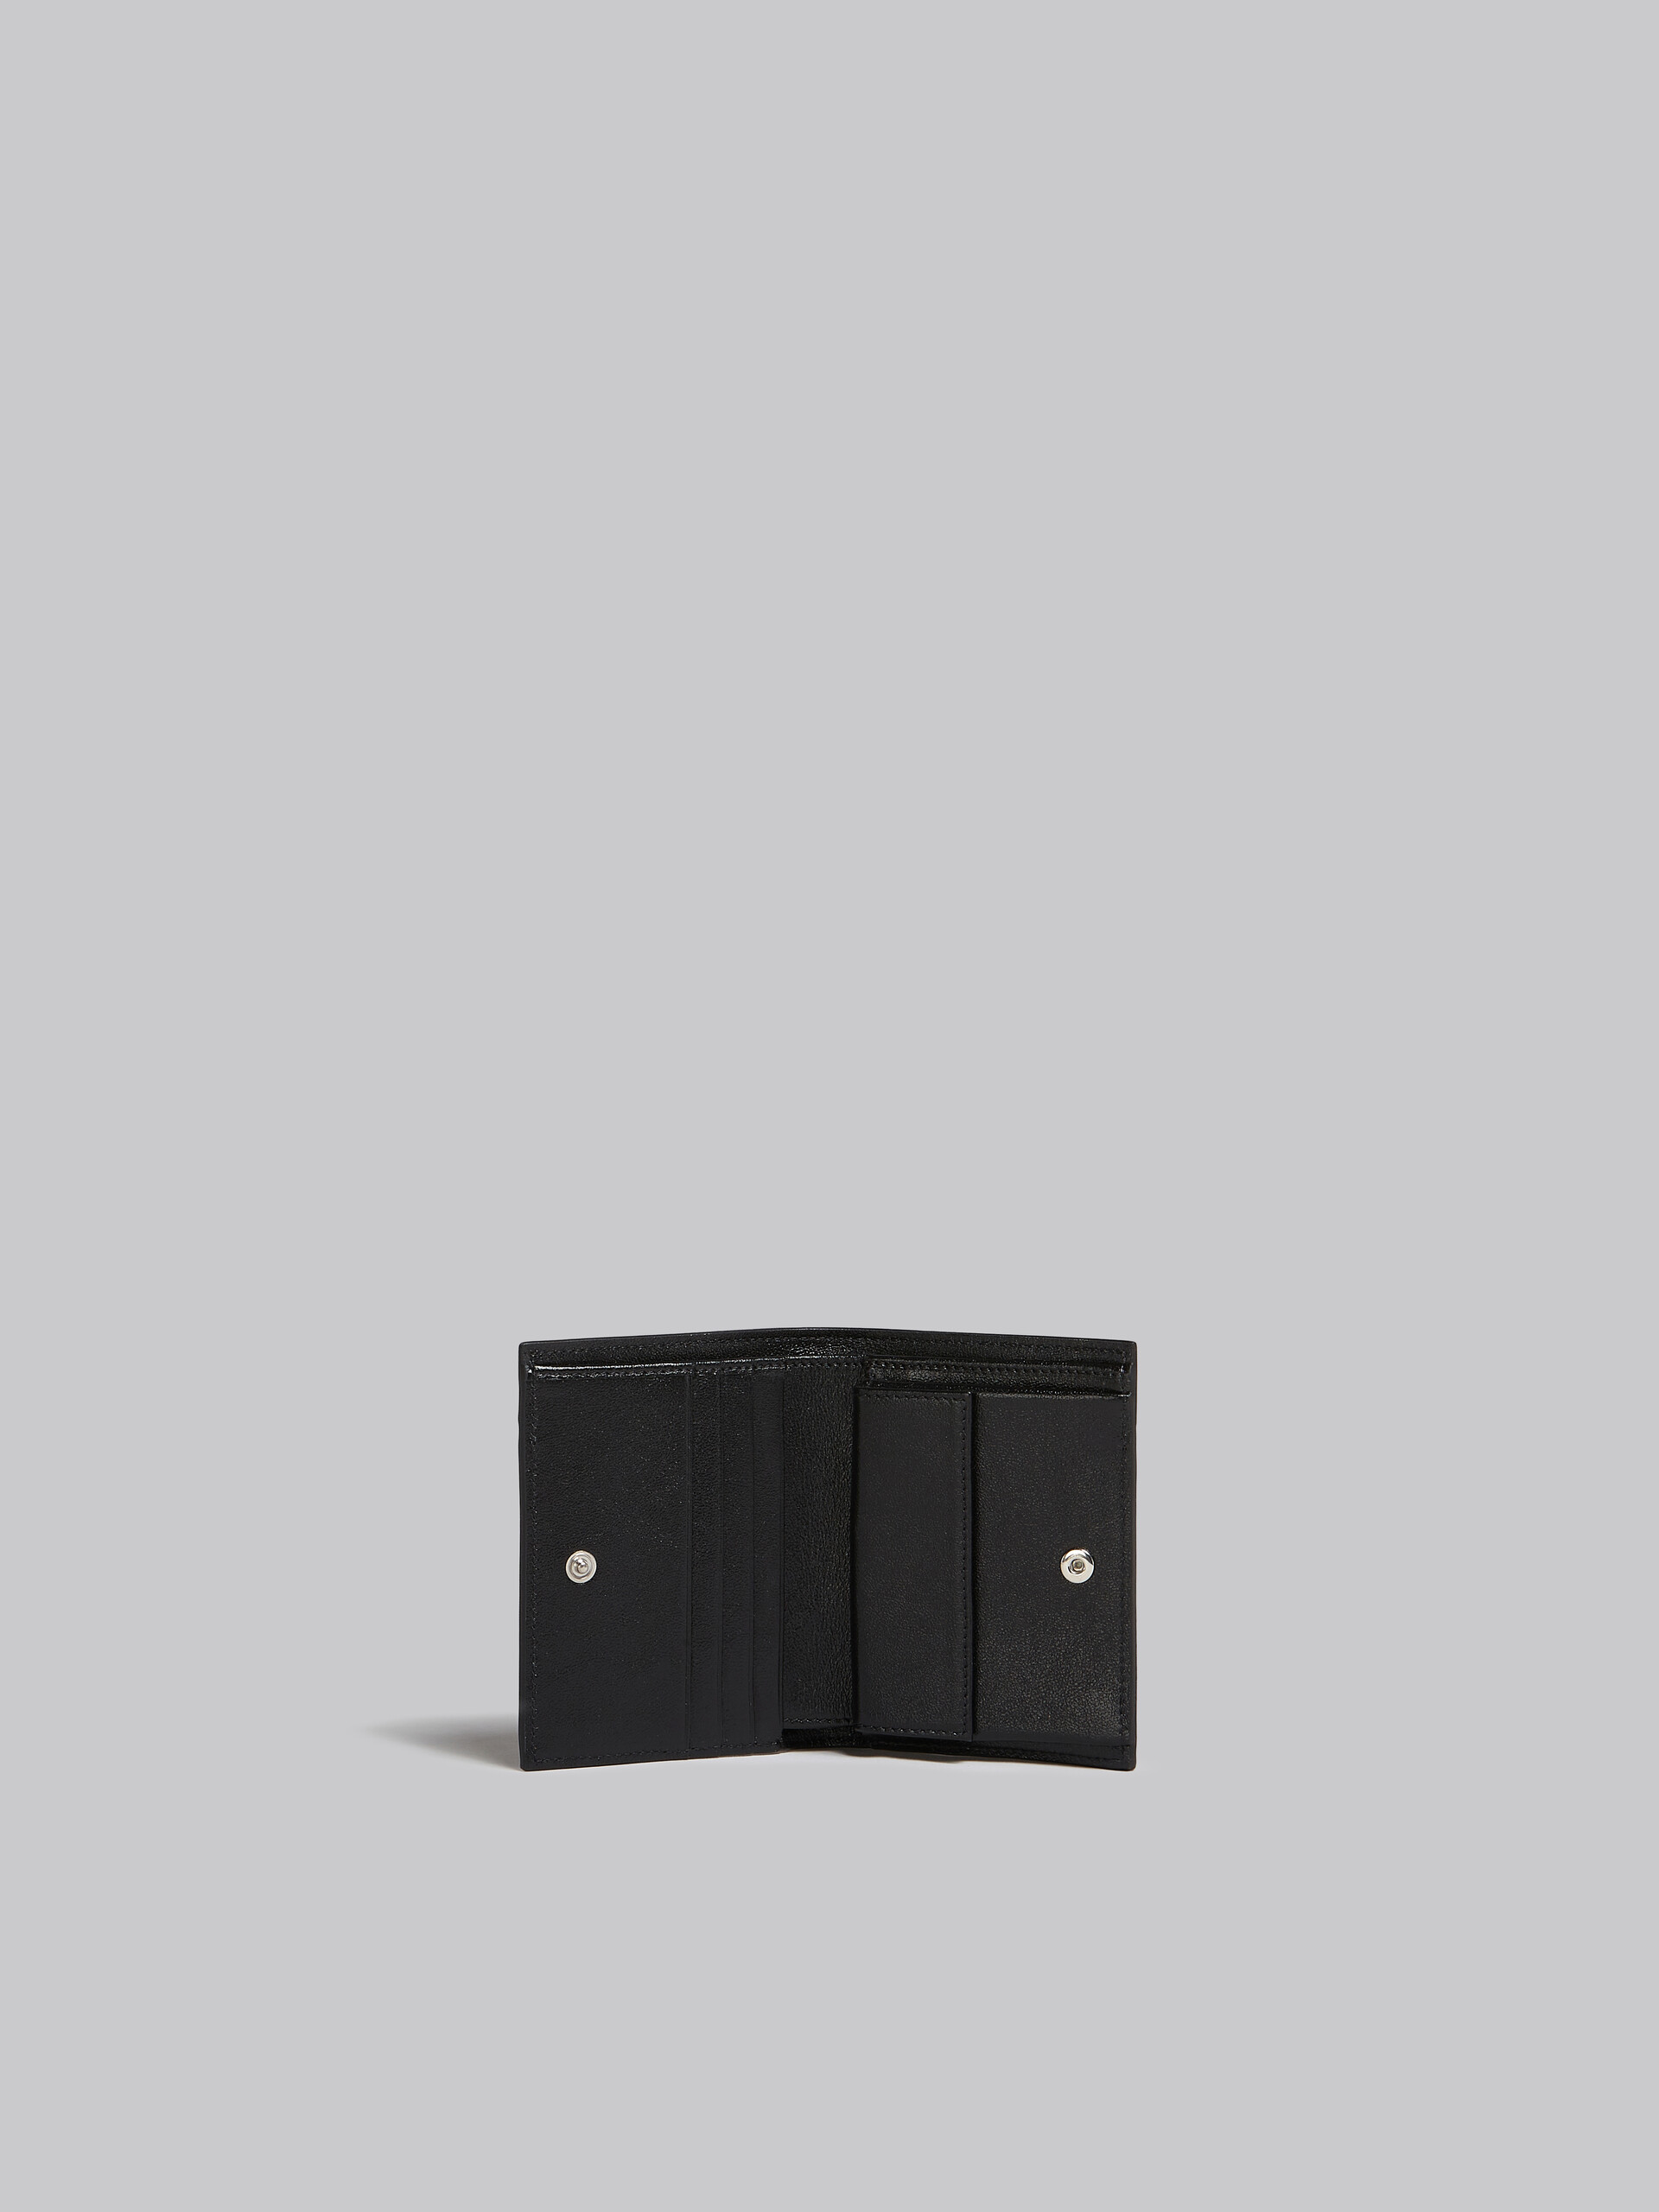 Portafoglio bi-fold in pelle blu e nera - Portafogli - Image 2